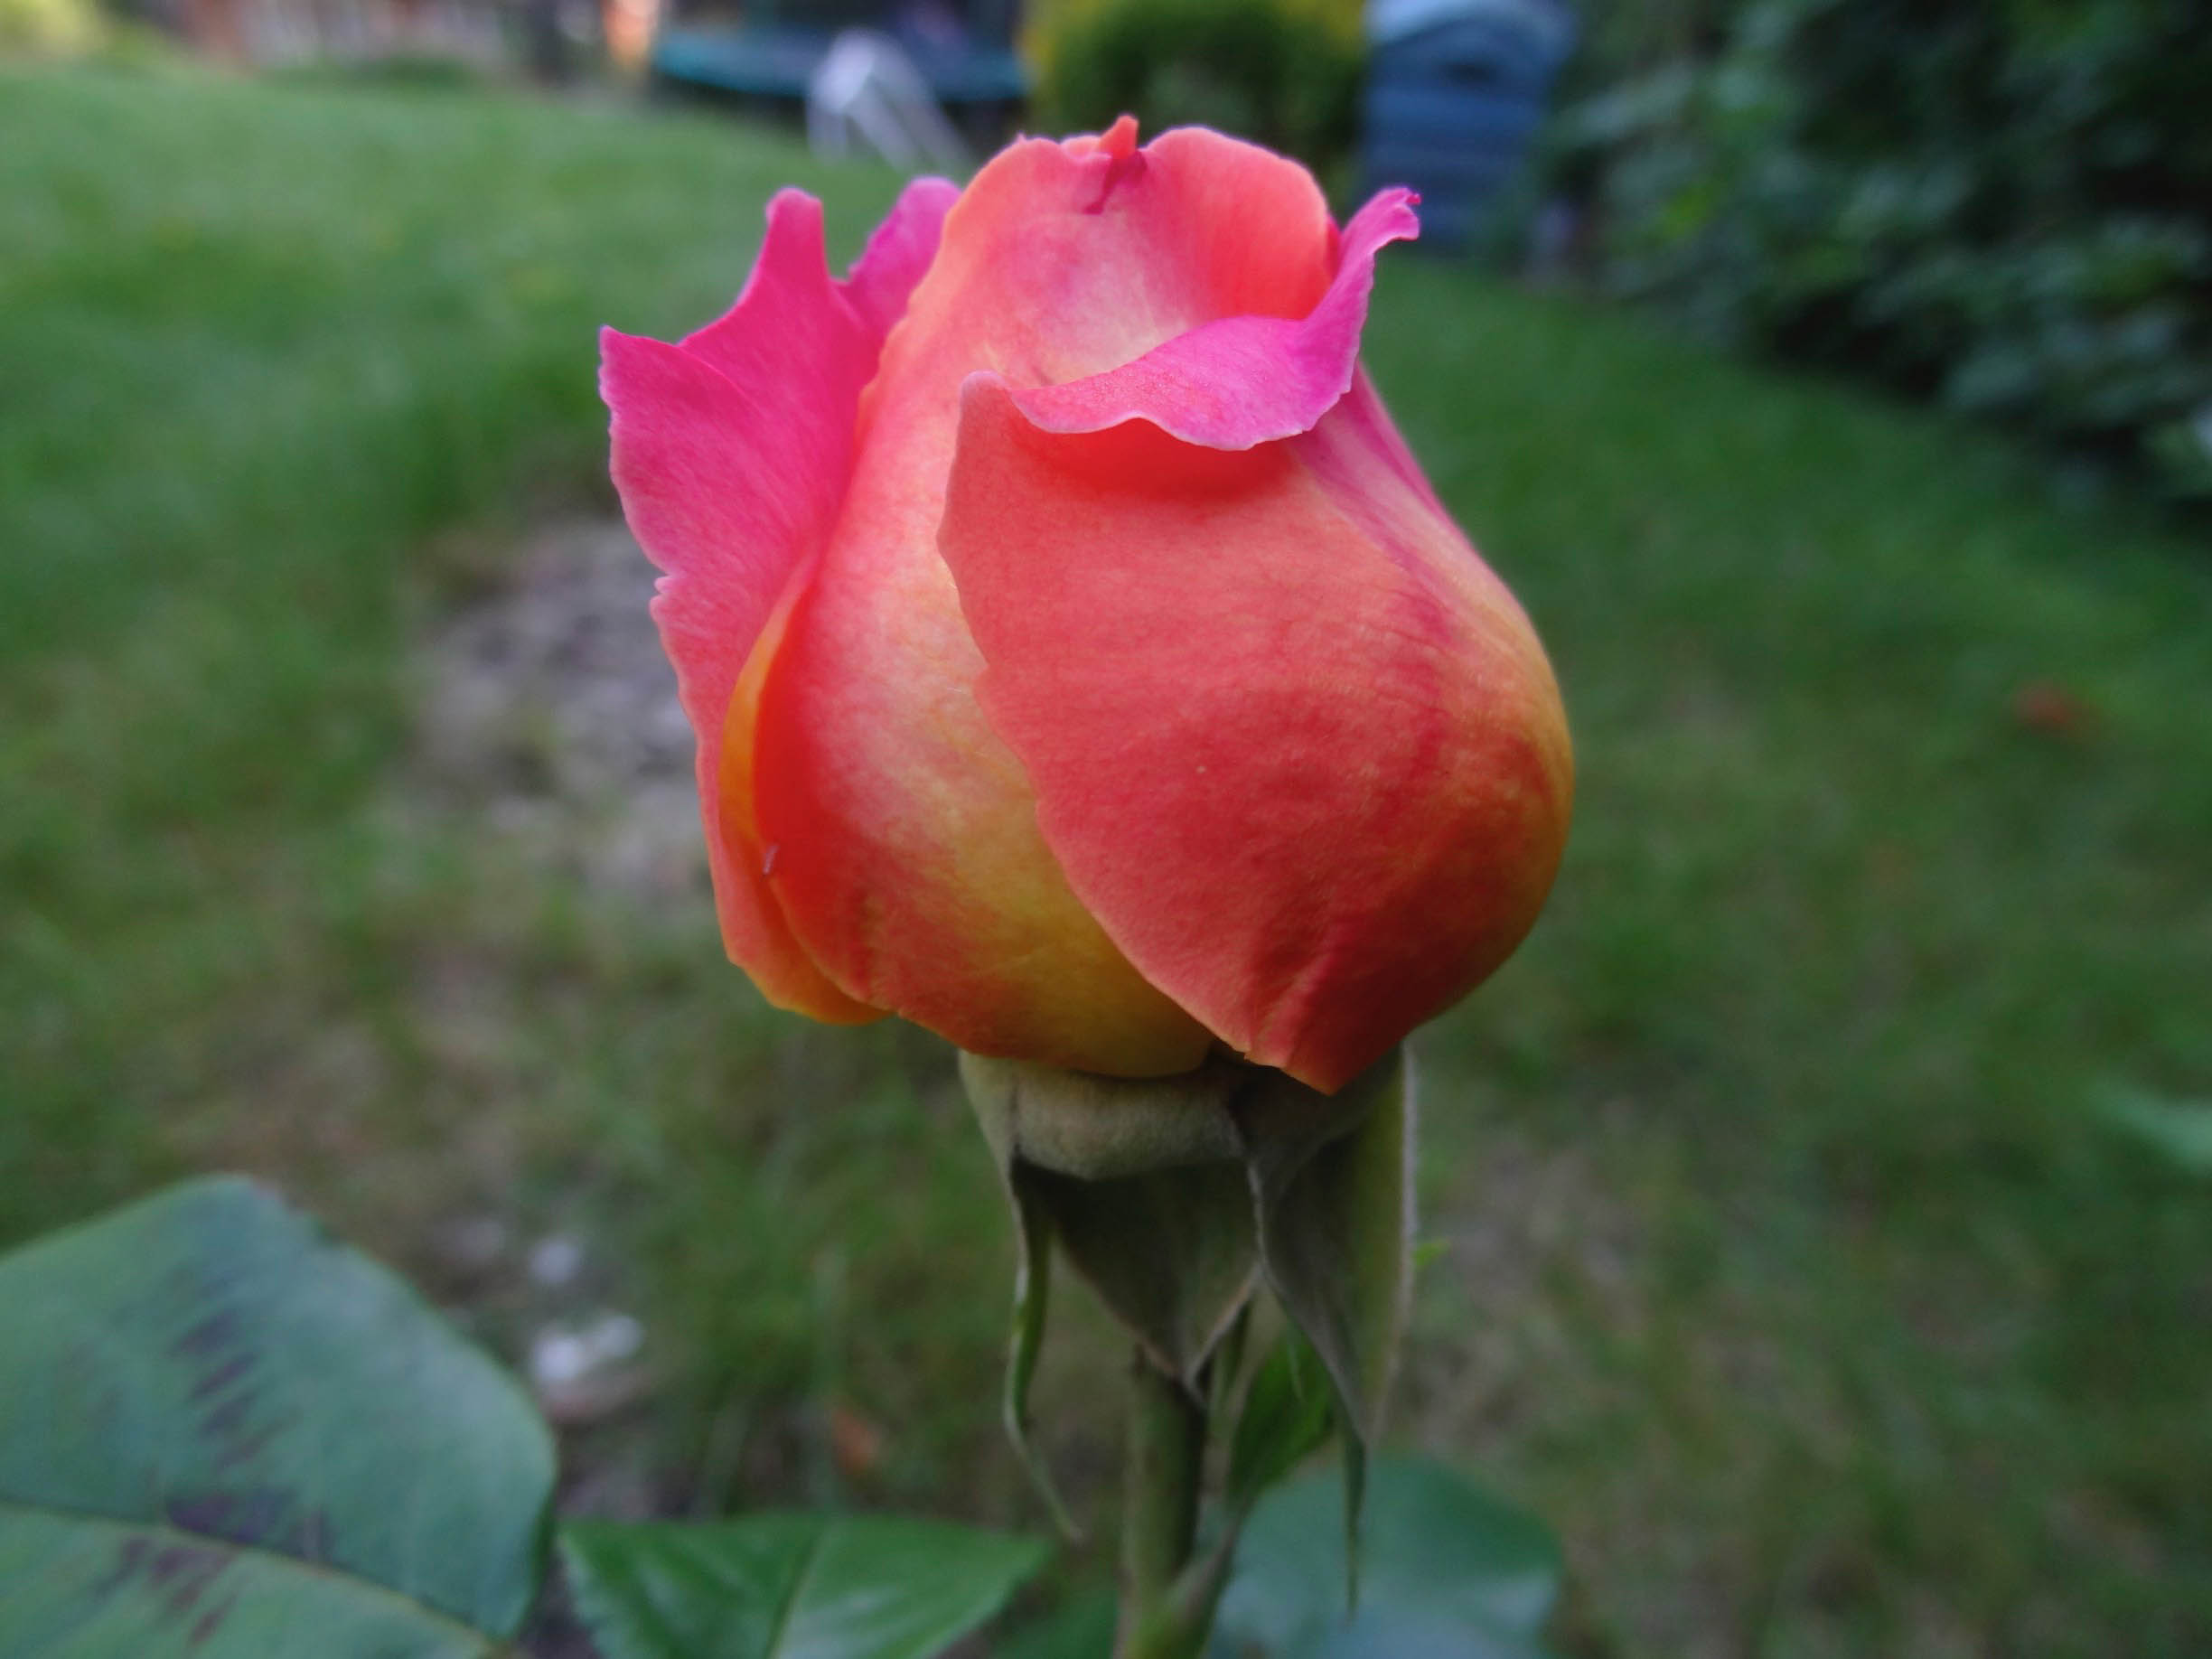 Garden rose from Mum